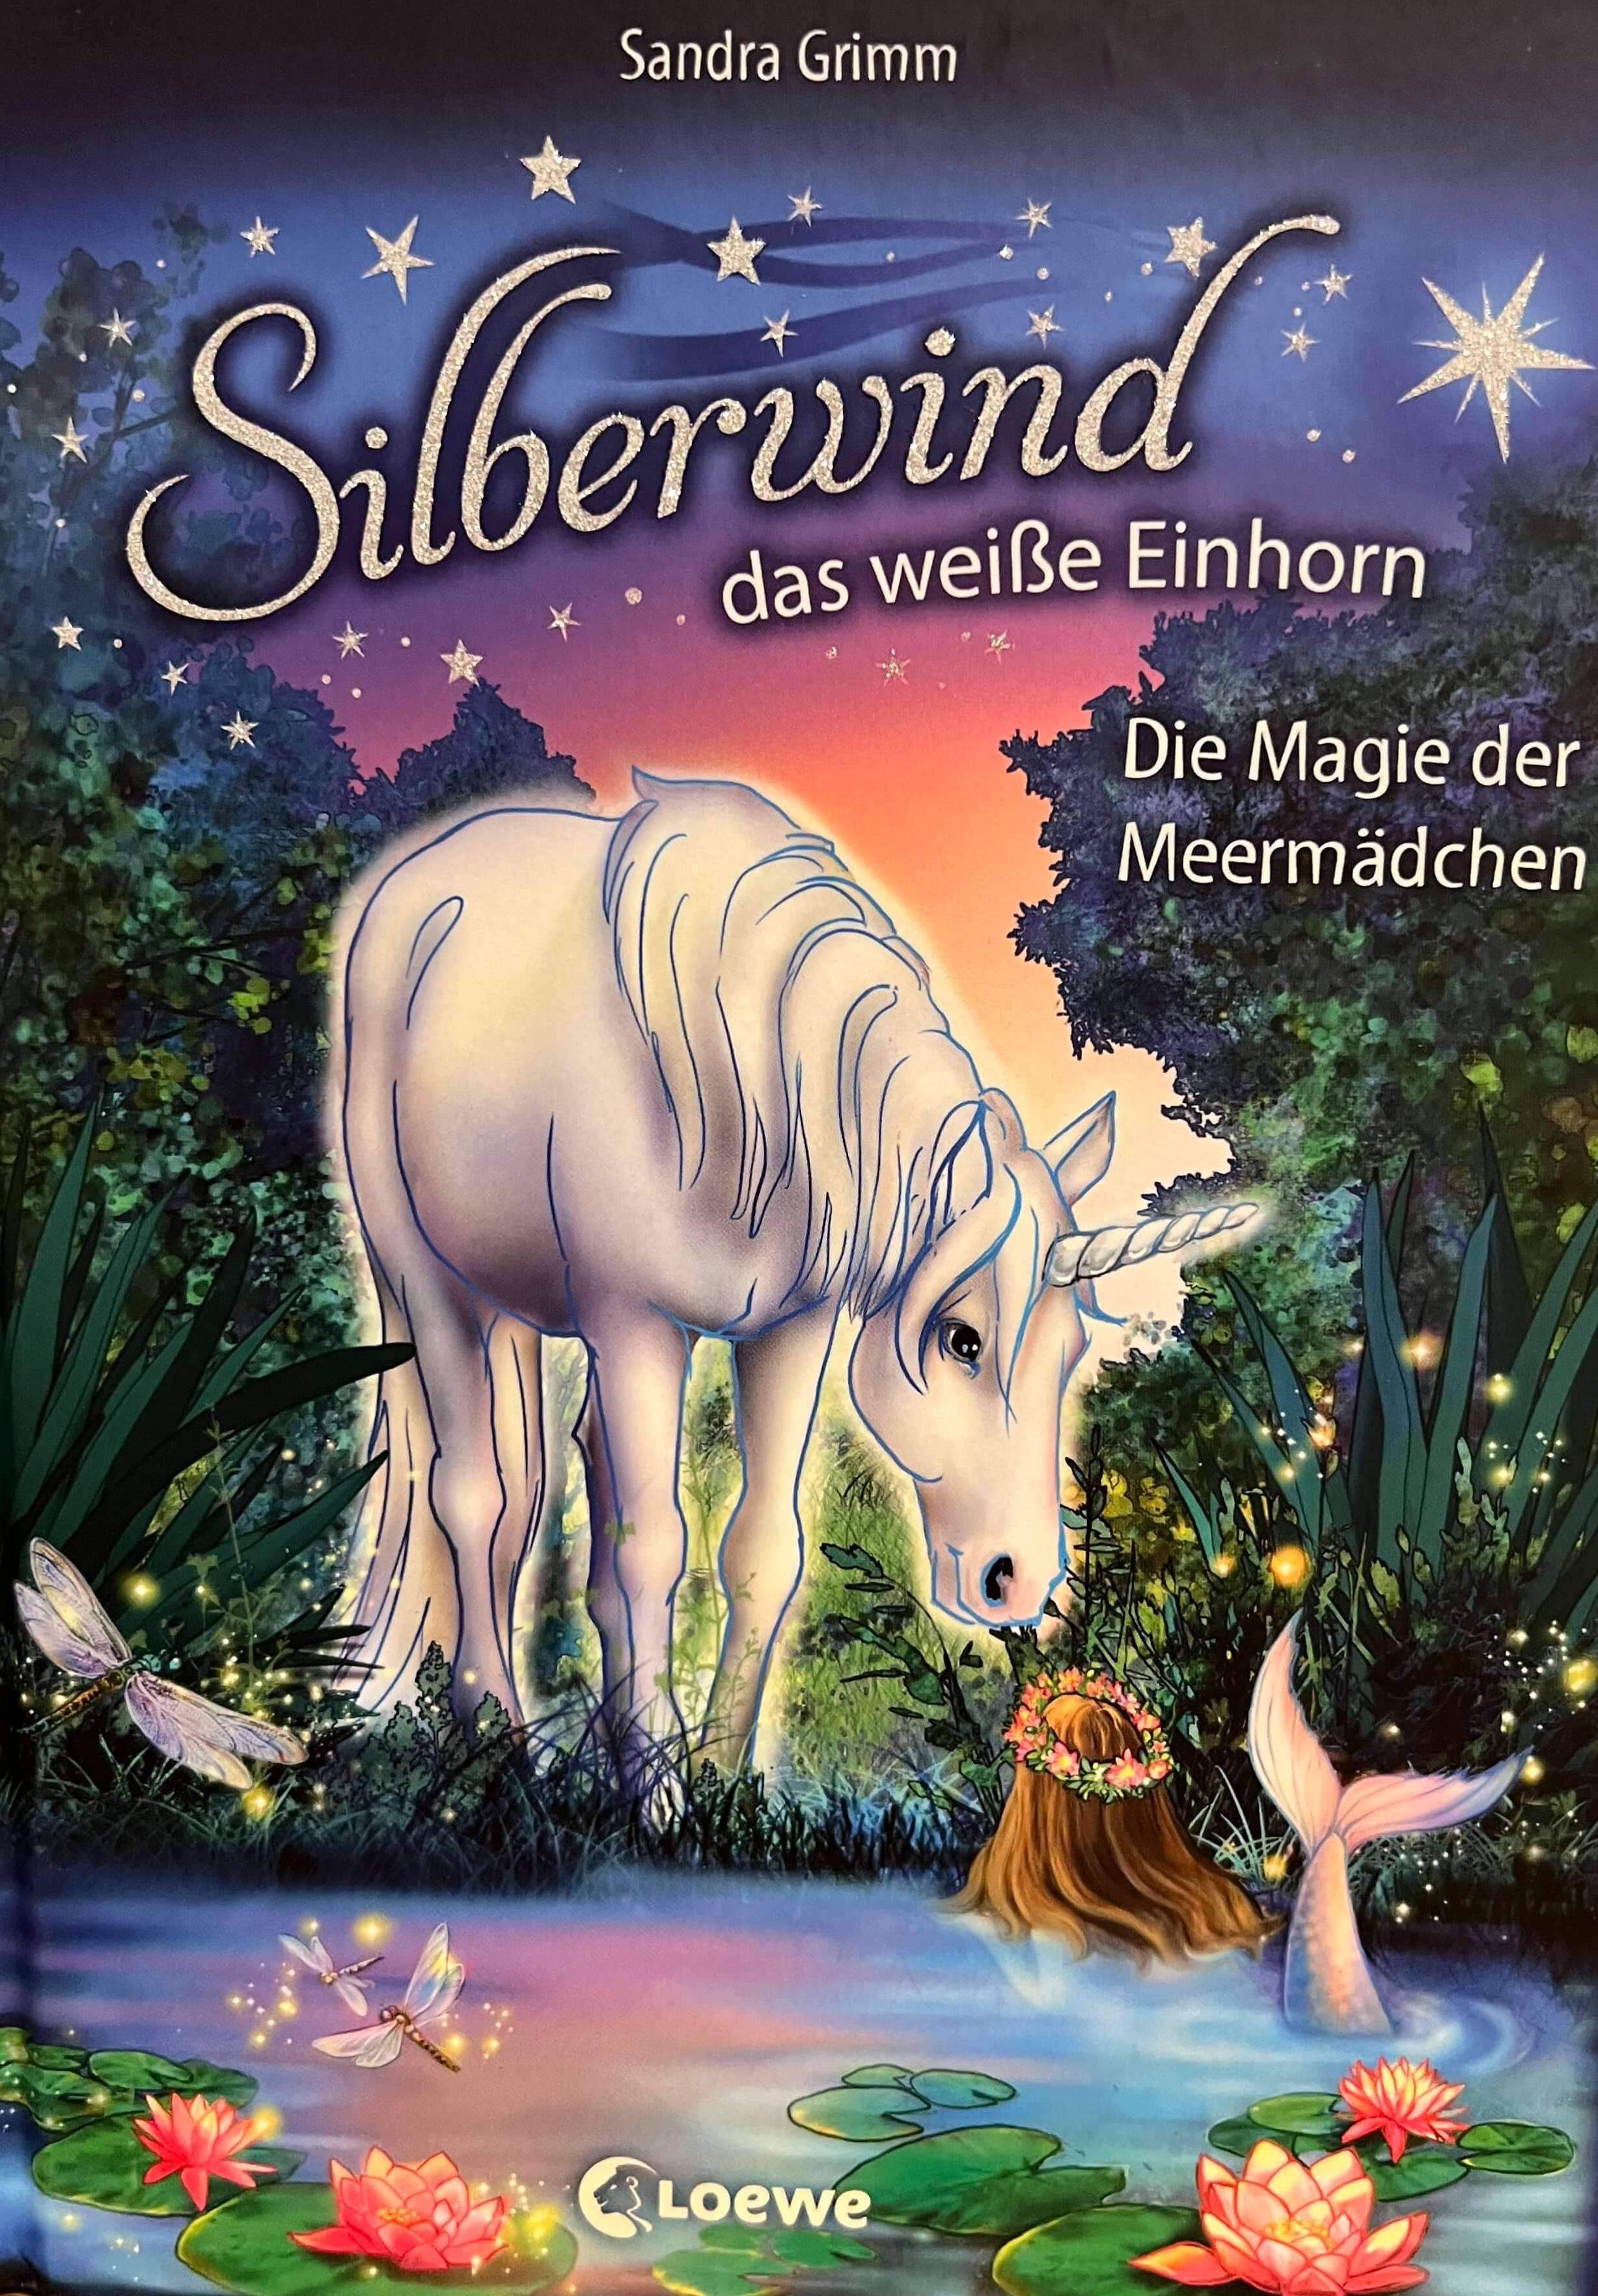 Silberwind das weisse Einhorn - Die Magie der Meermädchen (Bd. 10)